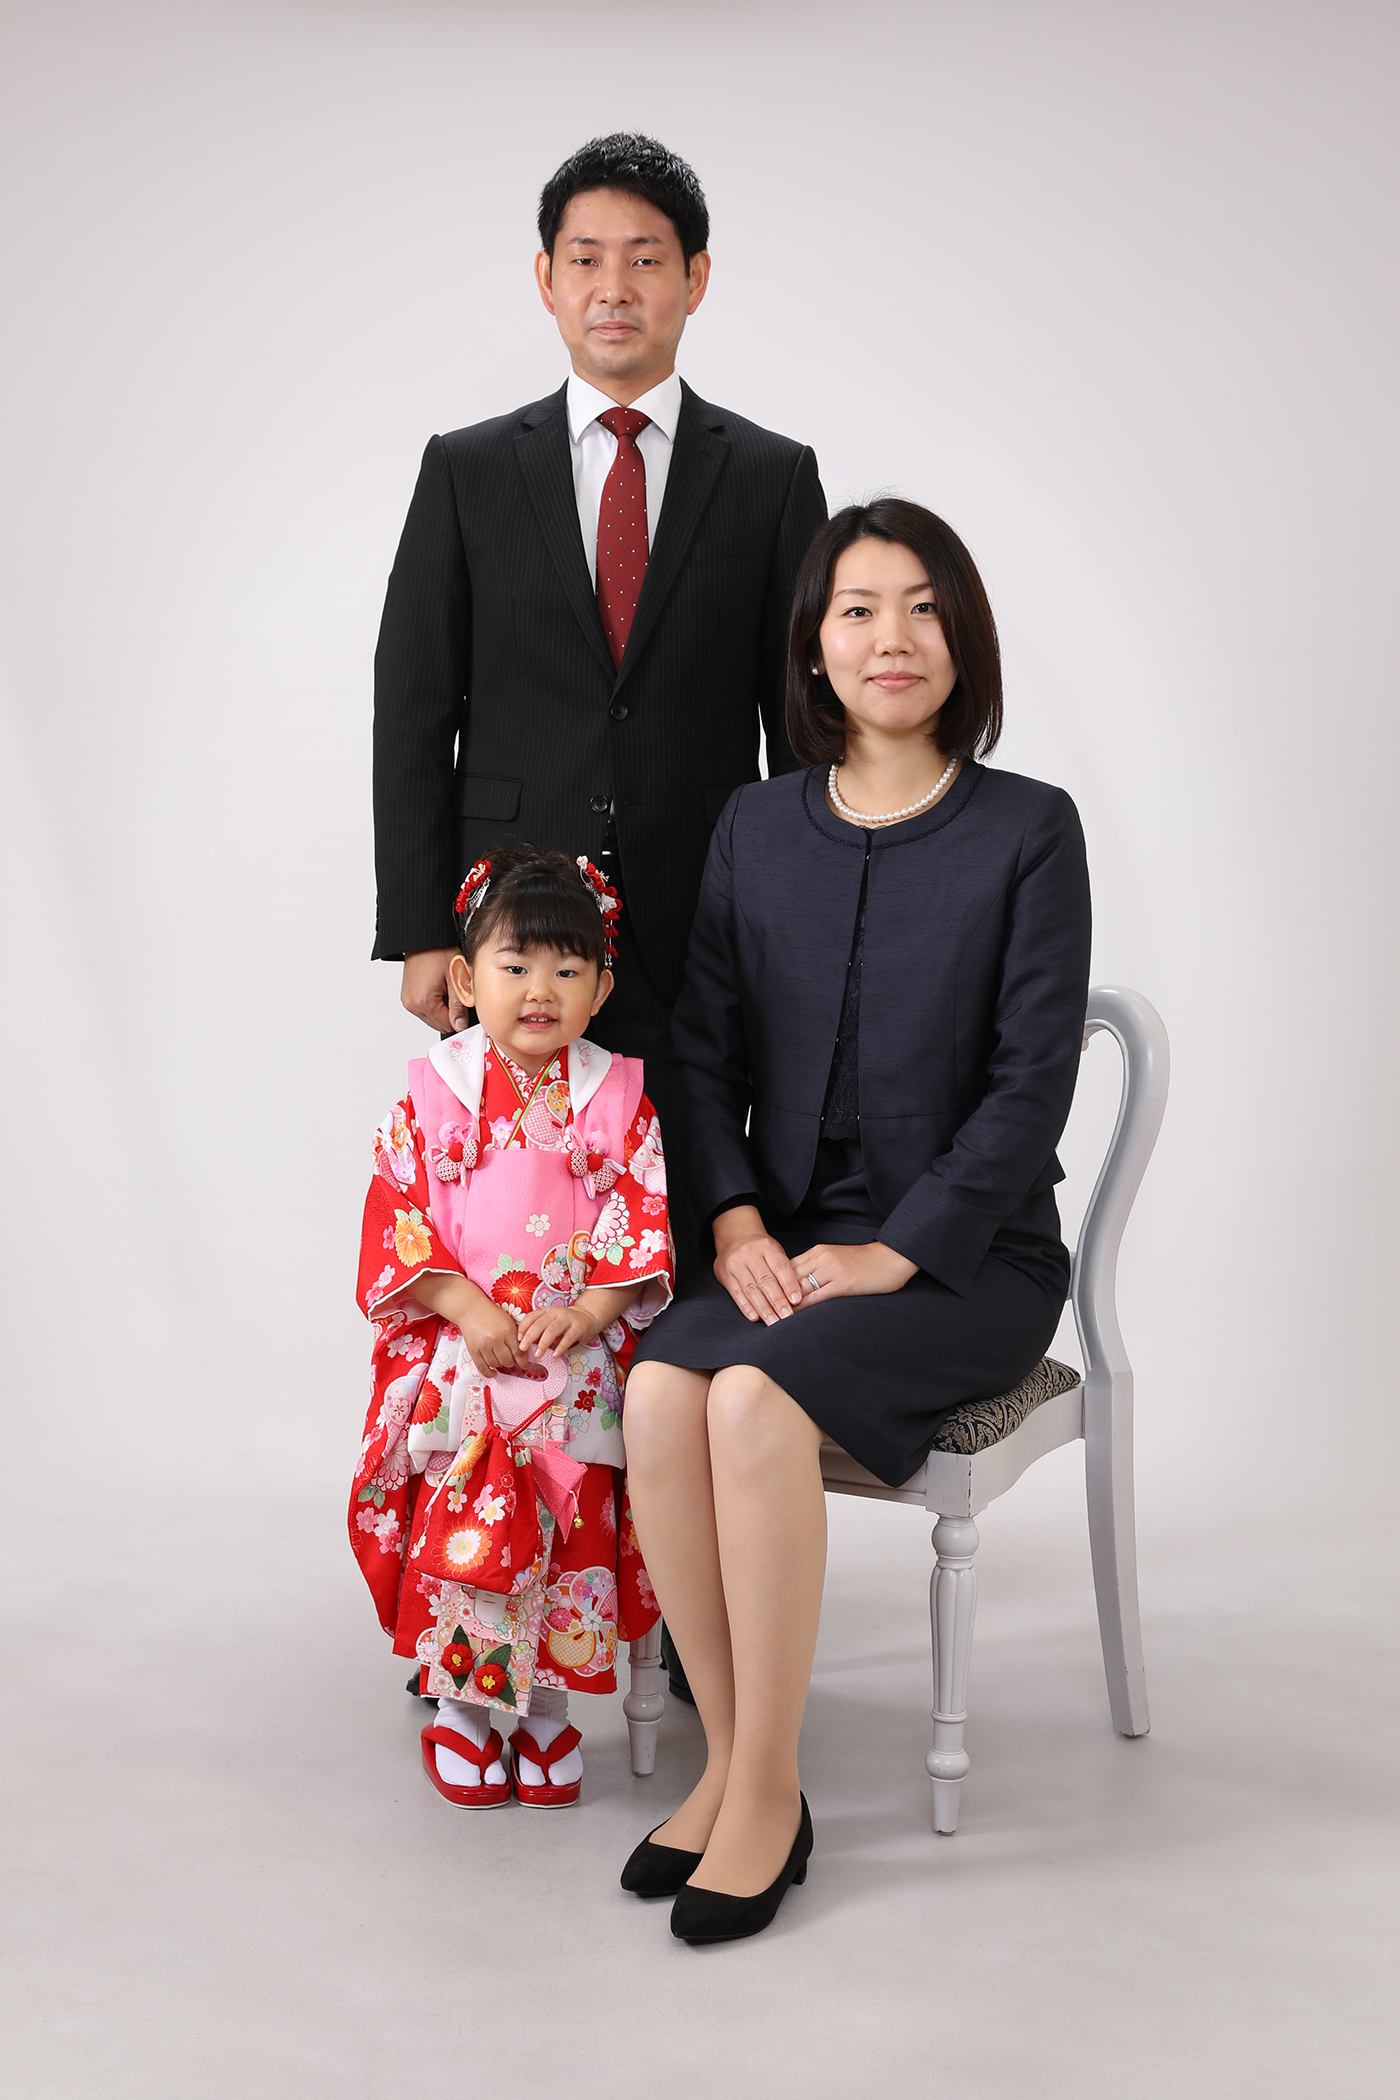 写真館スタジオでの家族写真 Seijo Smile Studio 成城のフォトスタジオ スタッフブログ